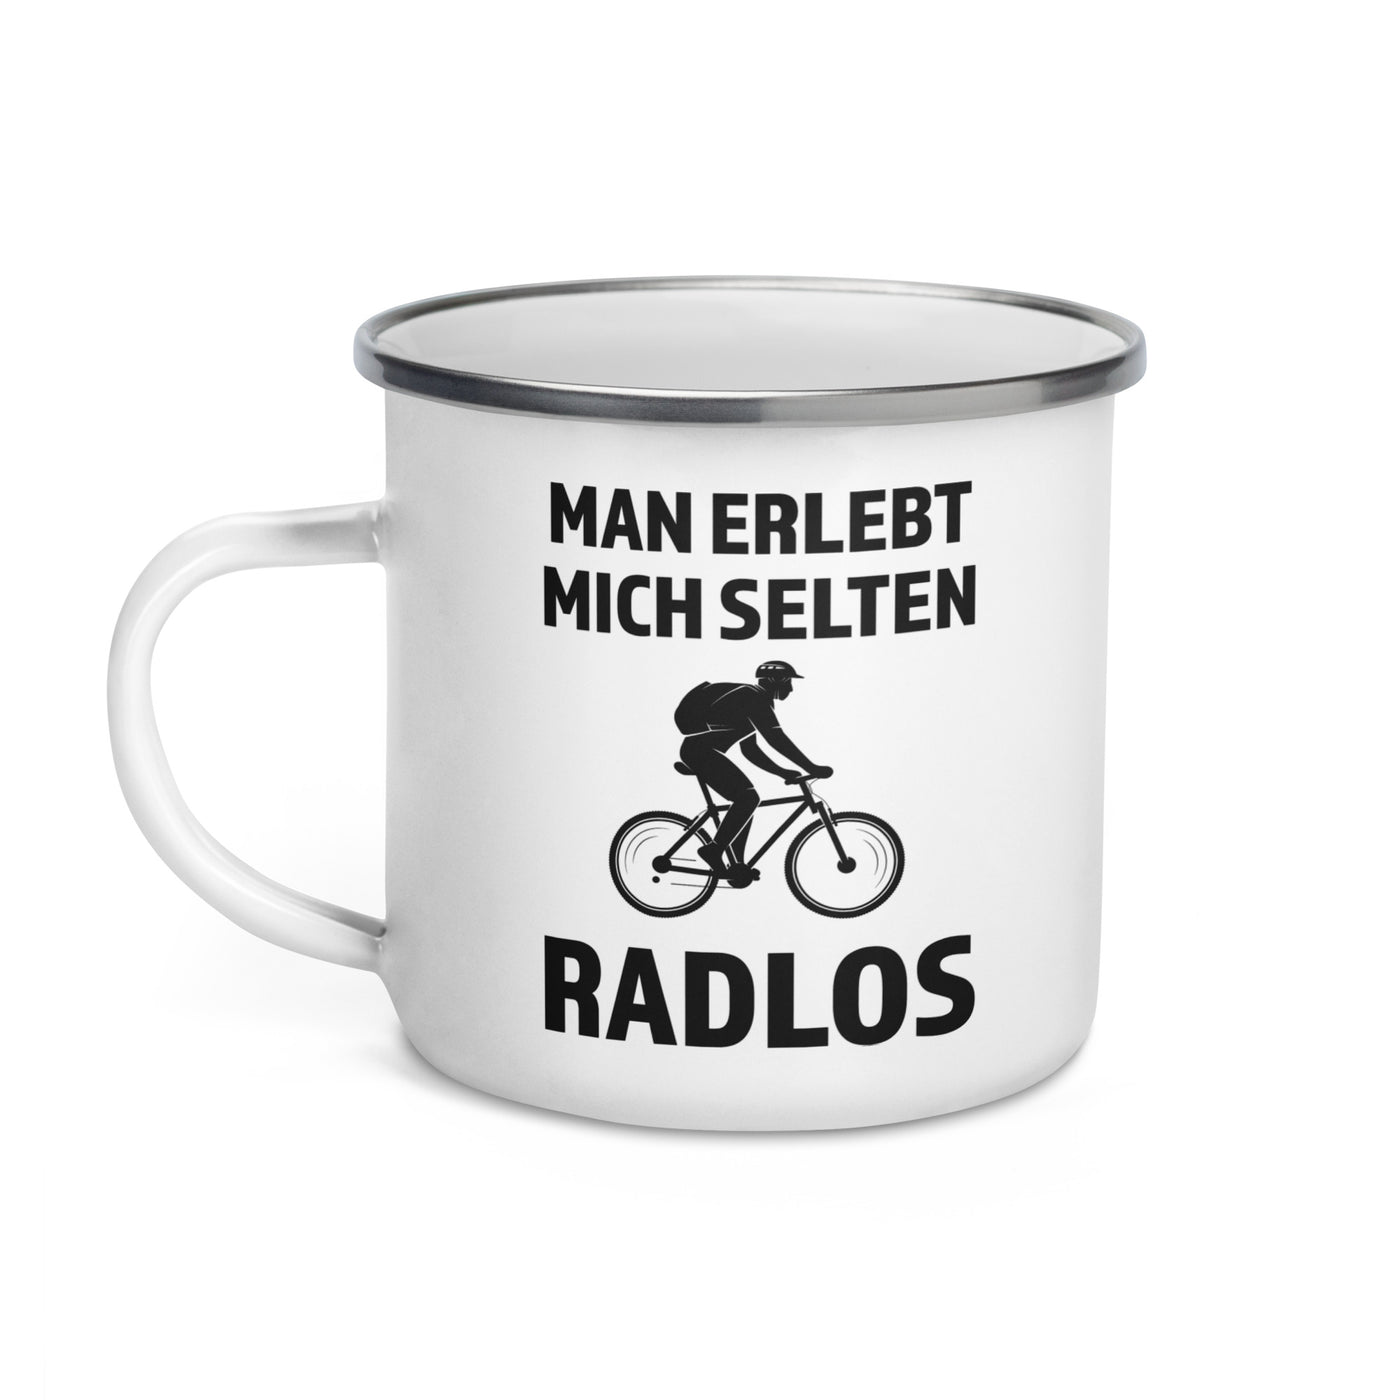 Man Erlebt Mich Selten Radlos - Emaille Tasse fahrrad mountainbike